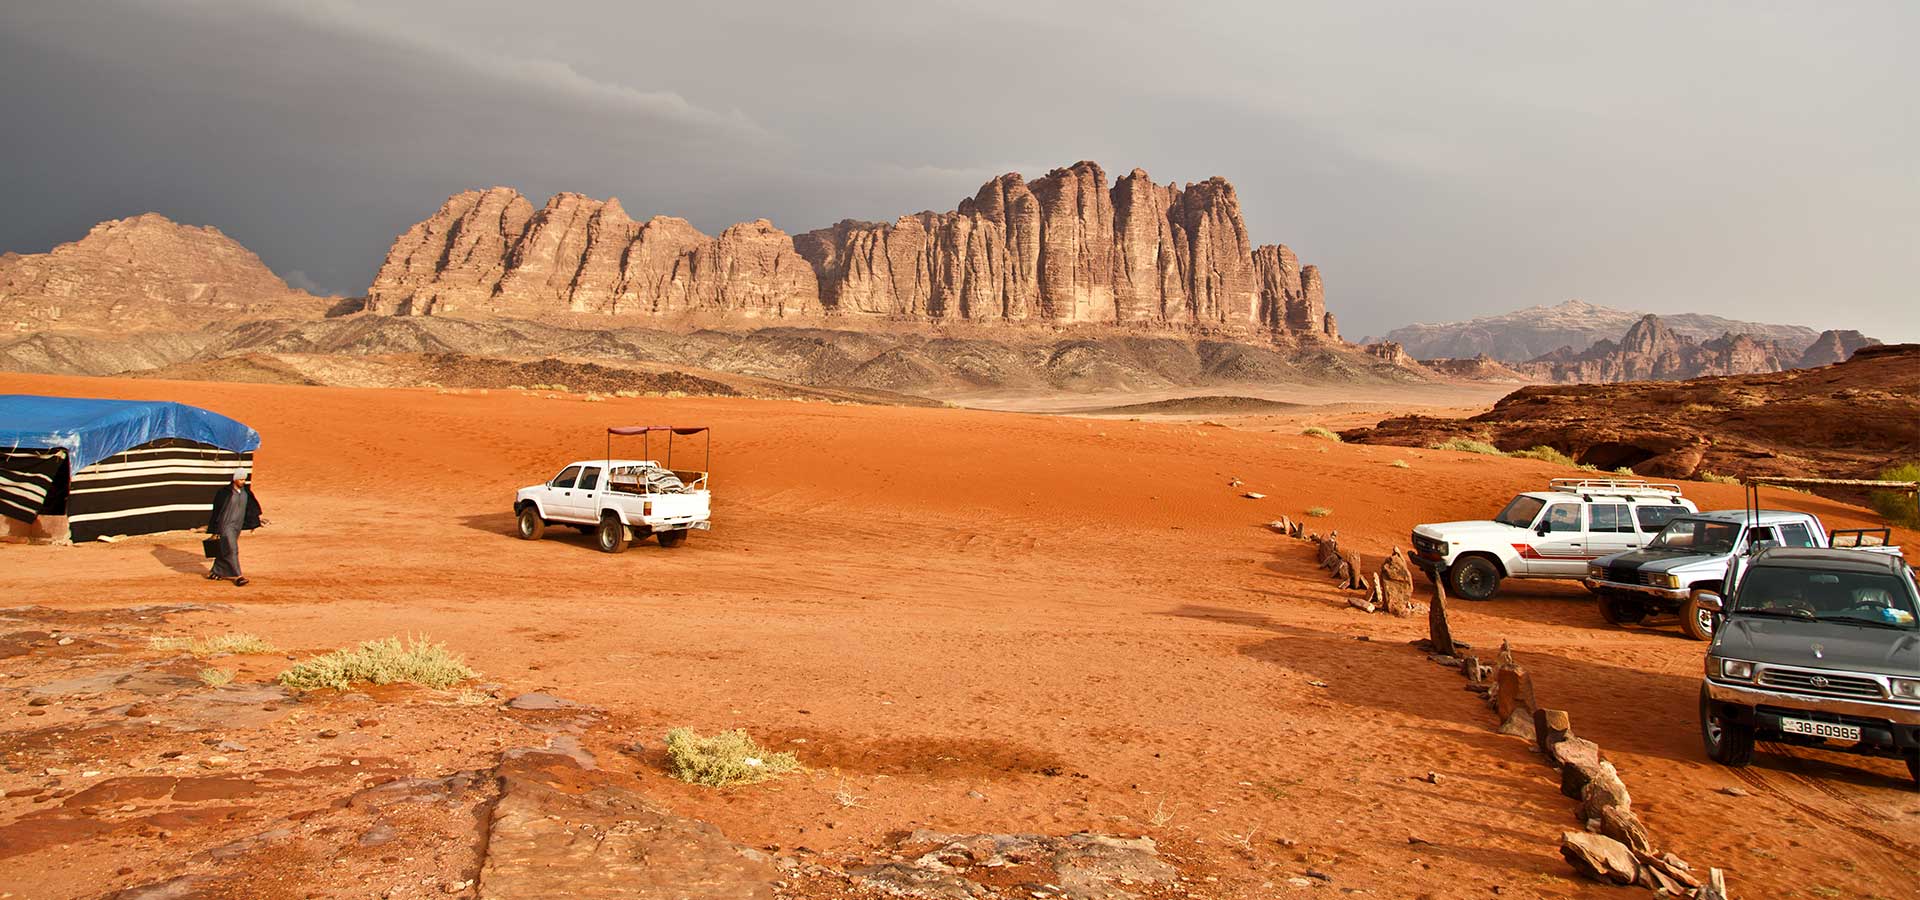 Discover Jordan: Explore Ancient Wonders & Desert Landscapes